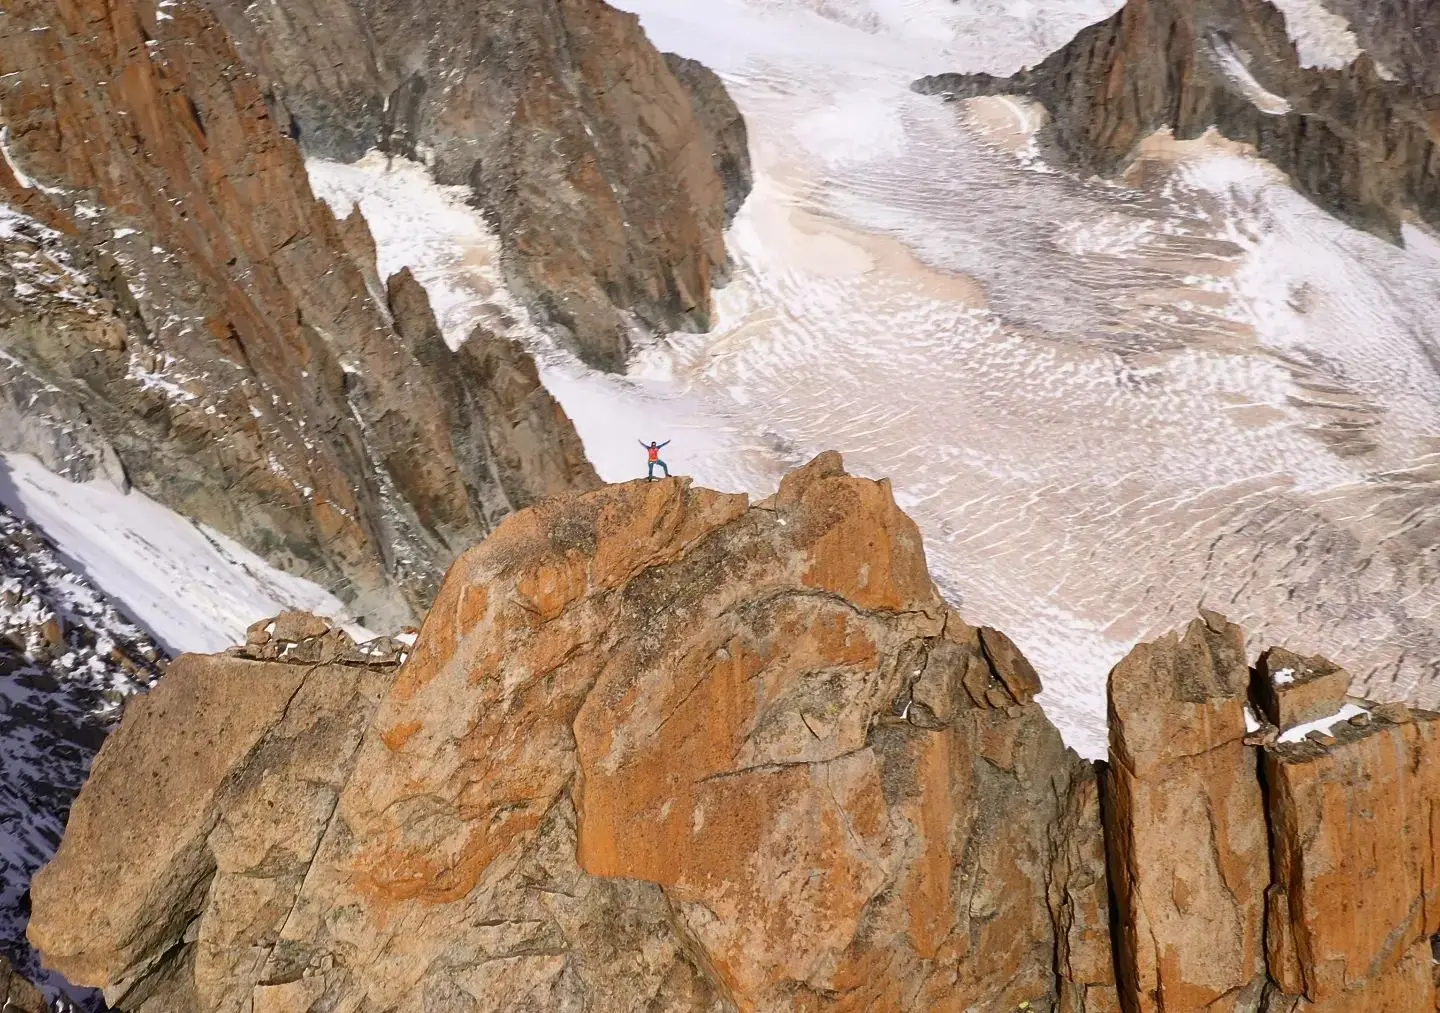 Філіп Бабіч (Filip Babicz) на маршруті сходження на Гранд Капуцин (Grand Capucin, 3838 метрів). Фото Vittorio Maggioni